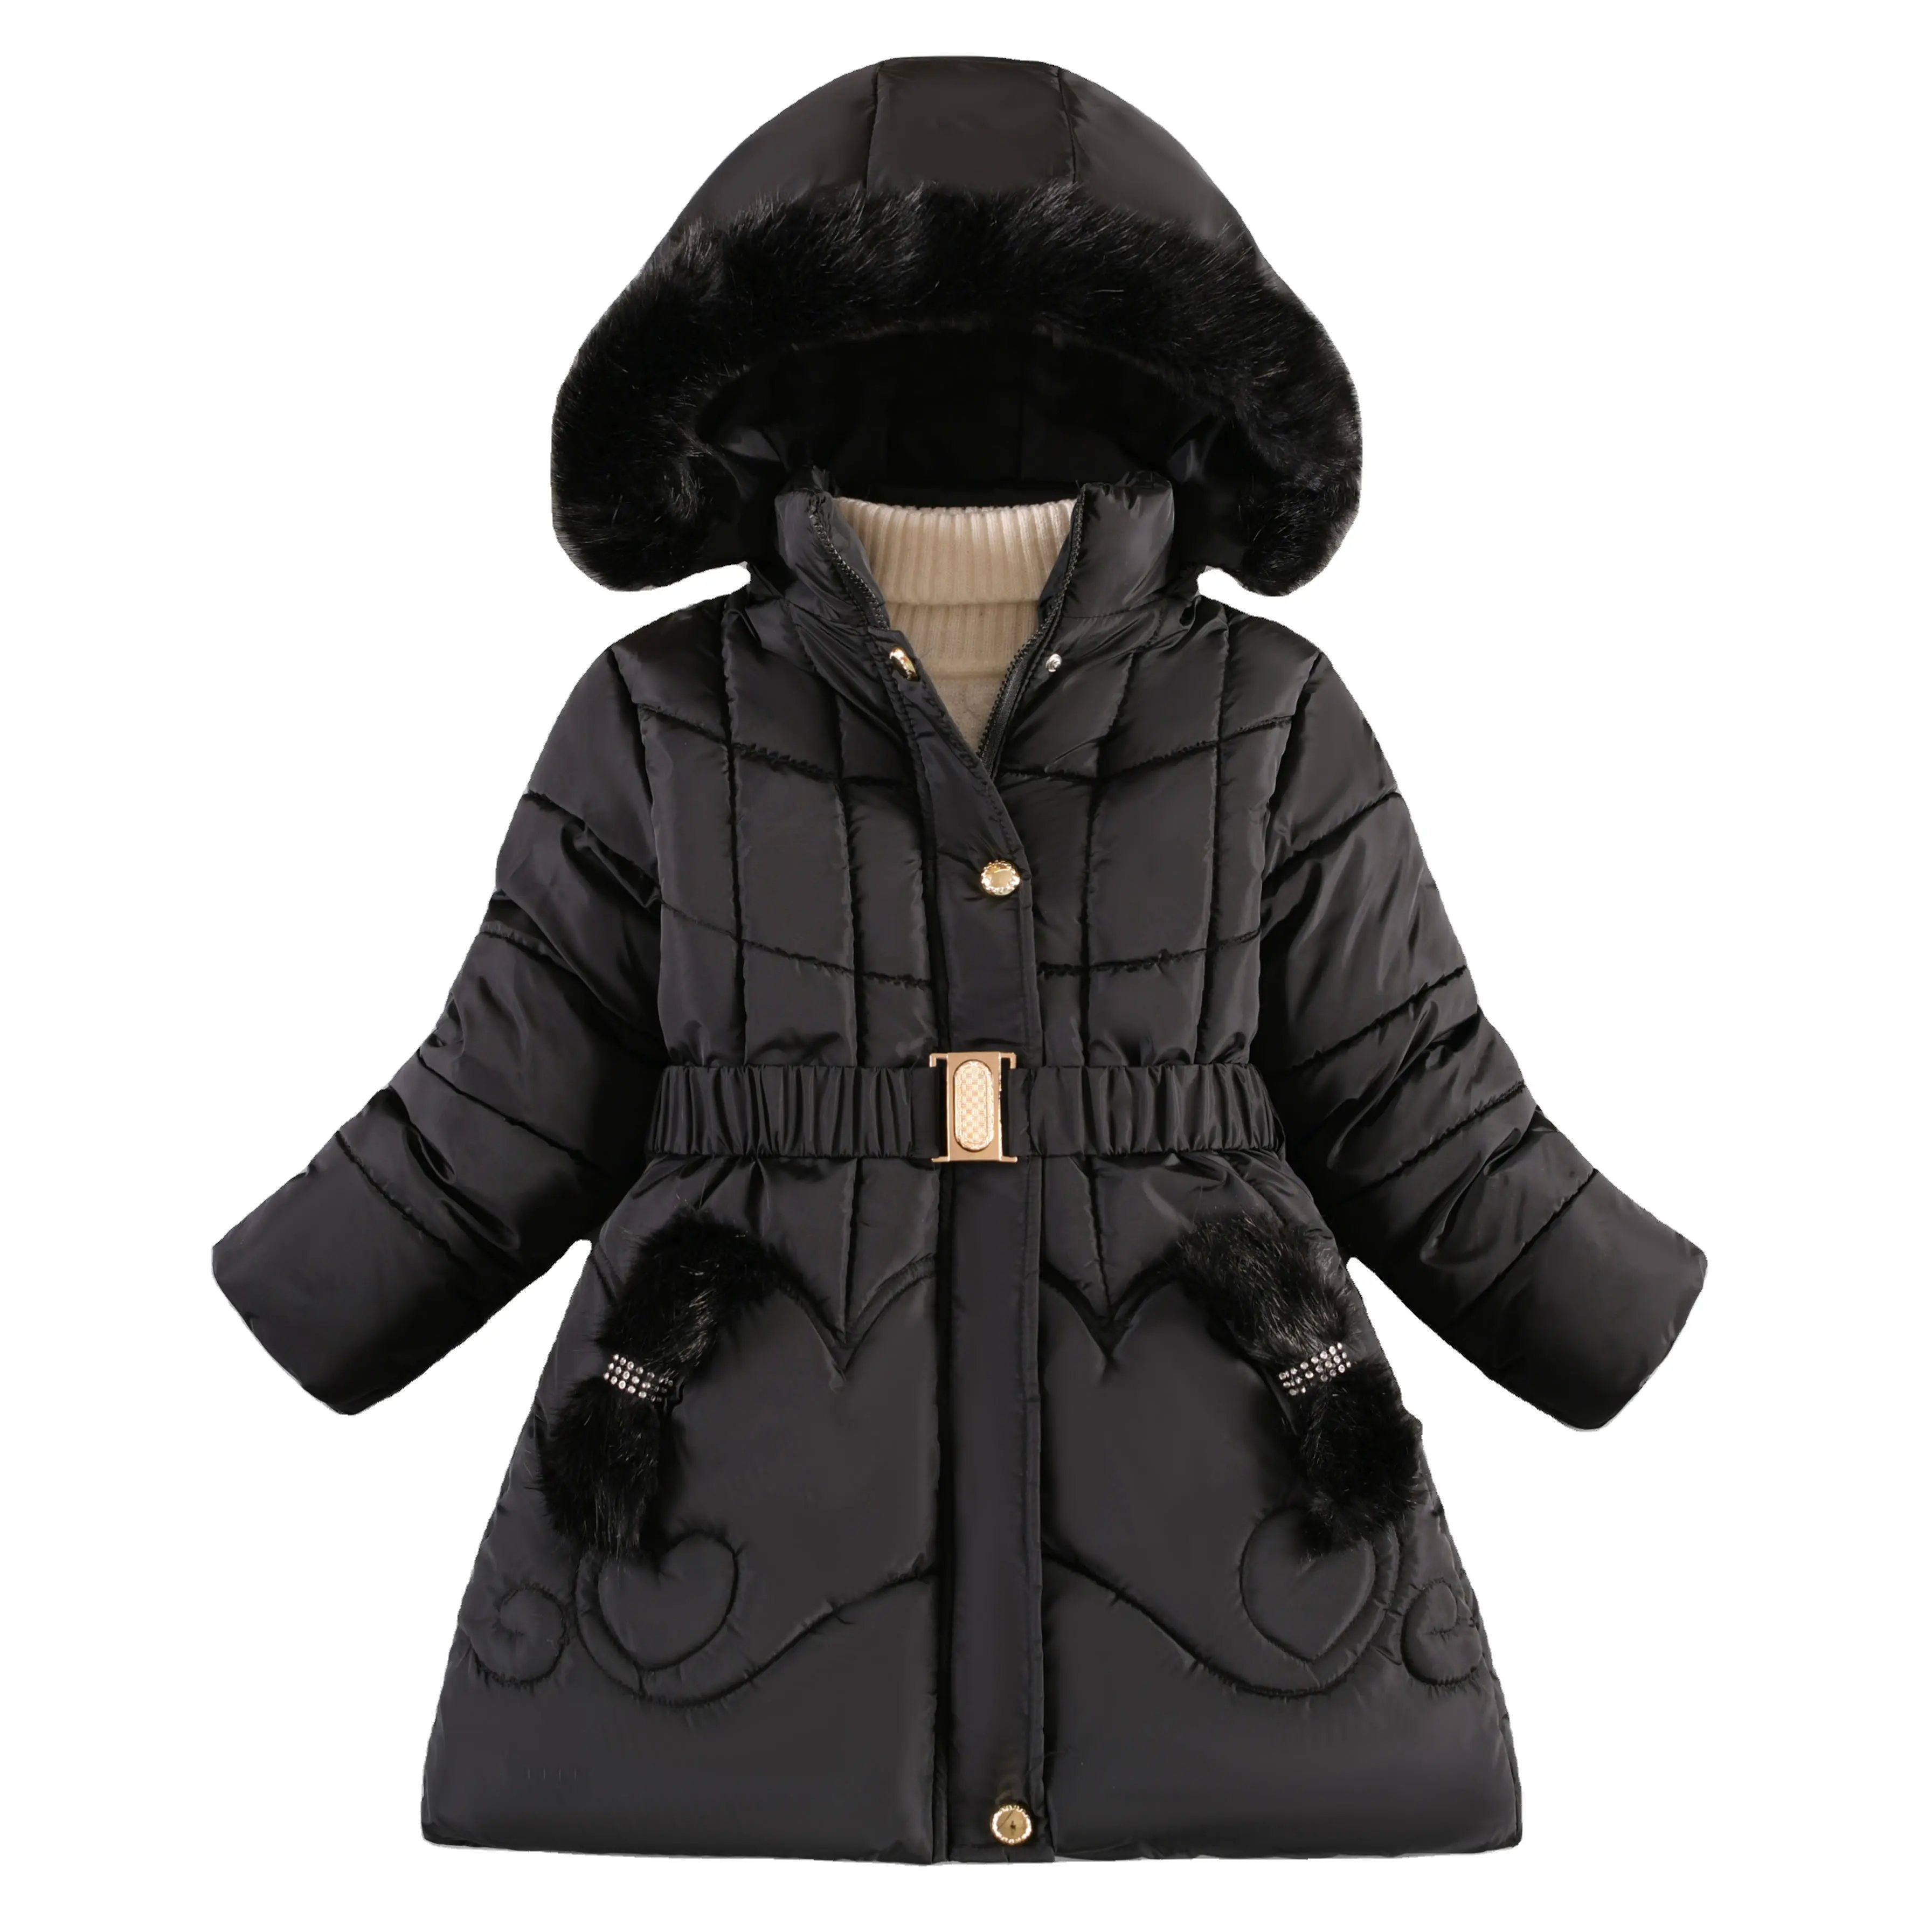 도매 최신 디자인 패션 겨울 따뜻한 유지 롱 다운 재킷 소녀 십대 두꺼운 방한 후드 방풍 코트